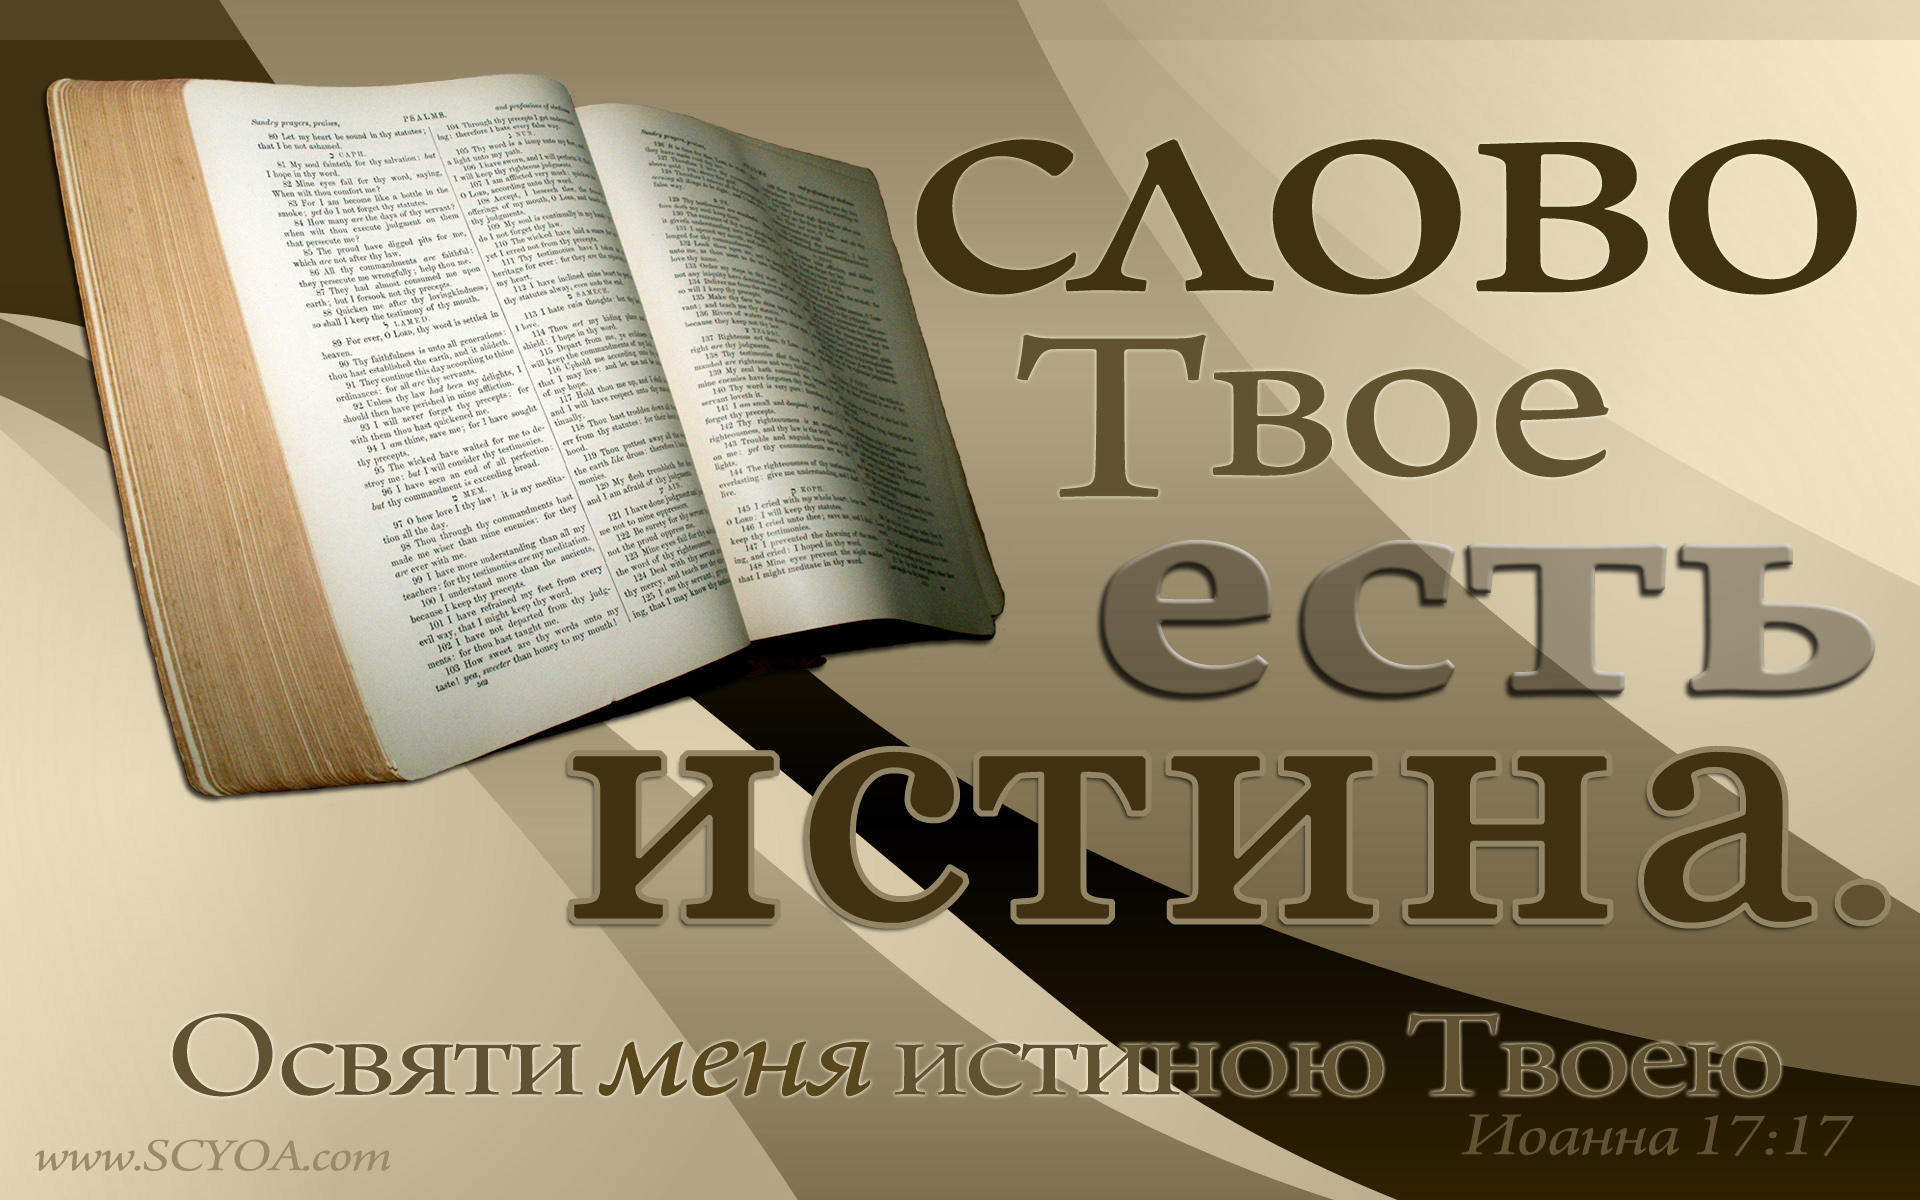 Слово бога. Слово твое есть истина Библия. Слово Божье. Библия слово Божье. Библия живое слово Божие.